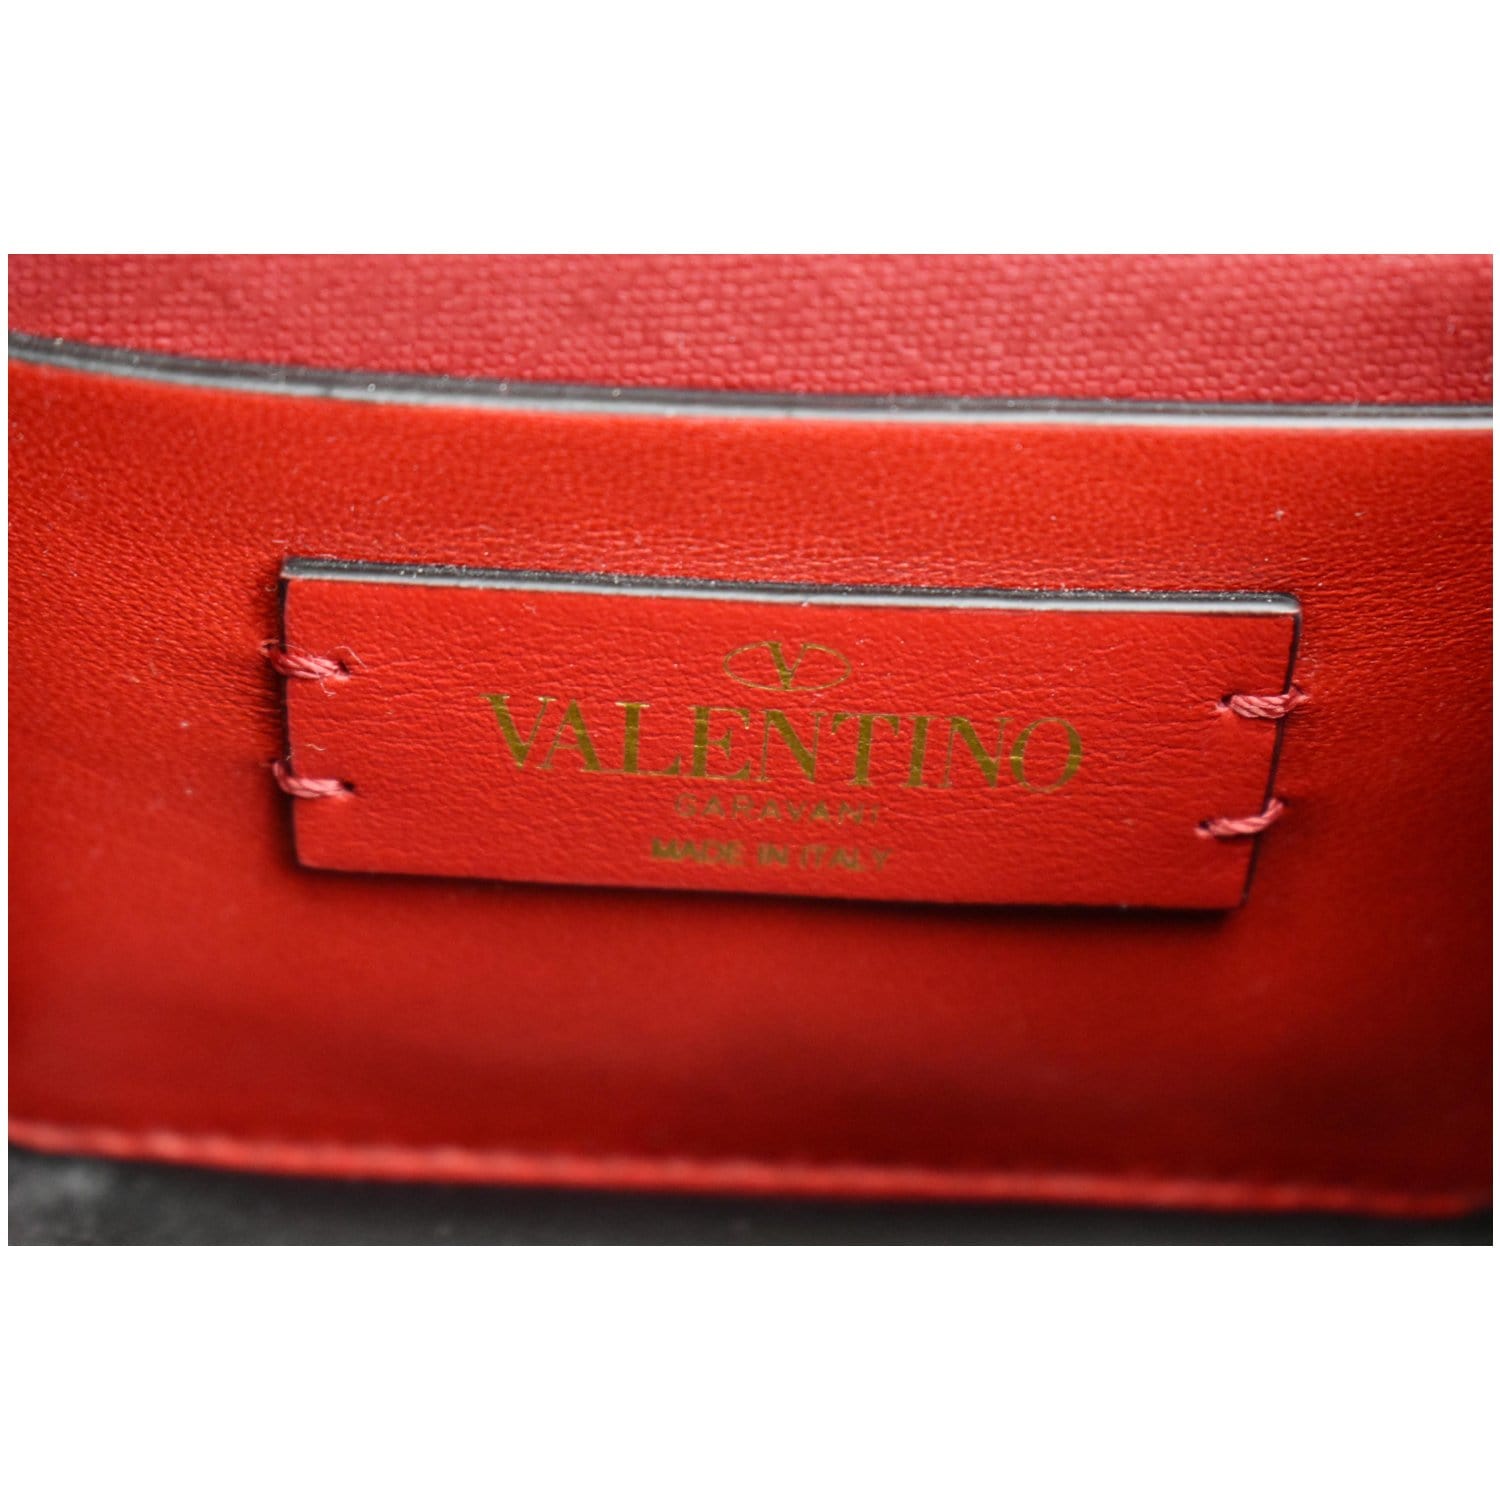 Vintage Valentino Garavani red leather clutch shoulder bag with